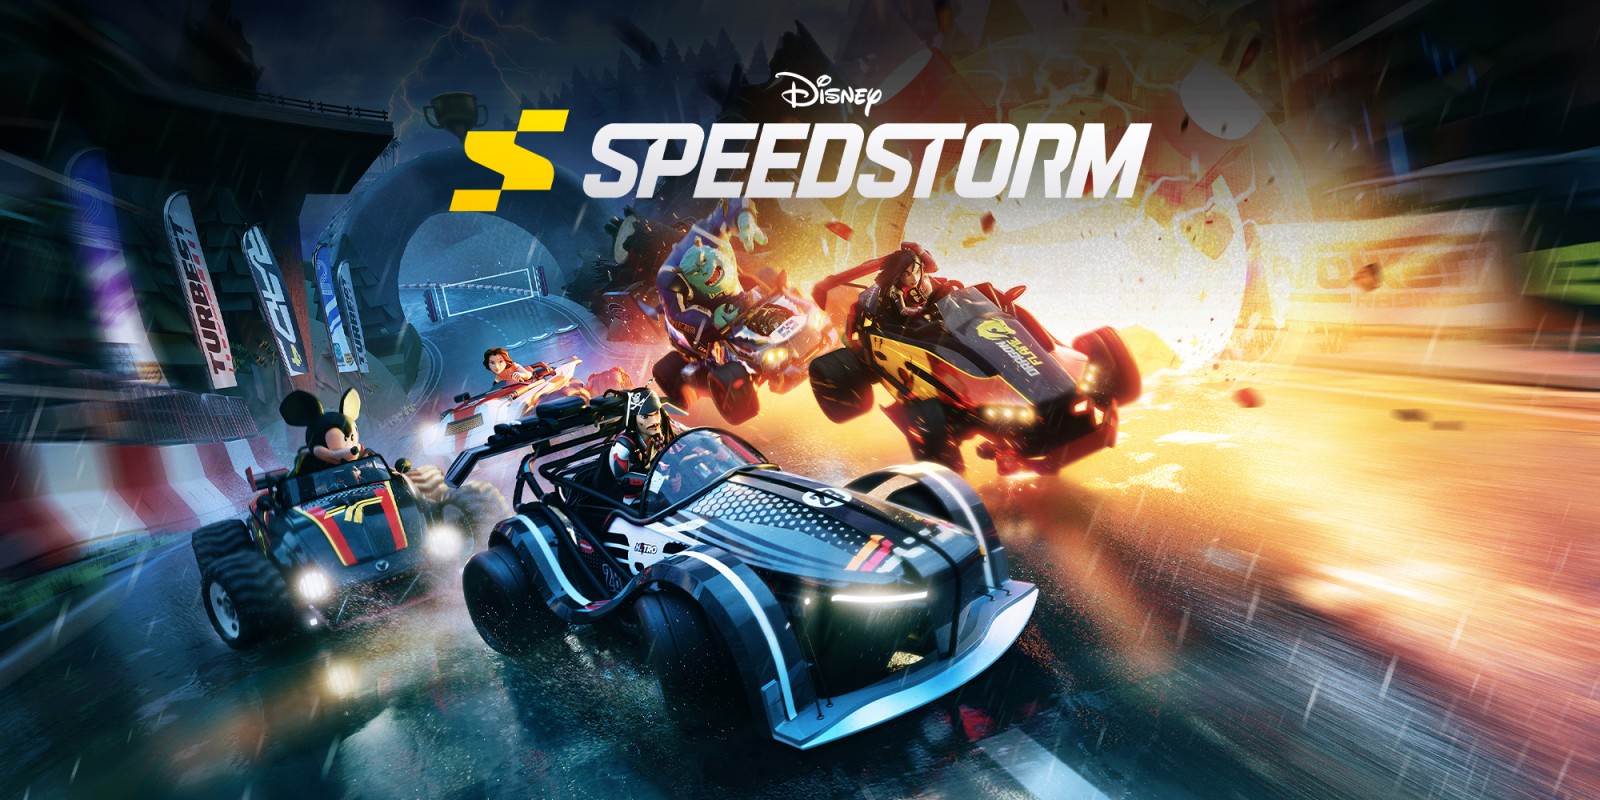 CGI-Trailer zu Disney Speedstorm veröffentlicht Titel